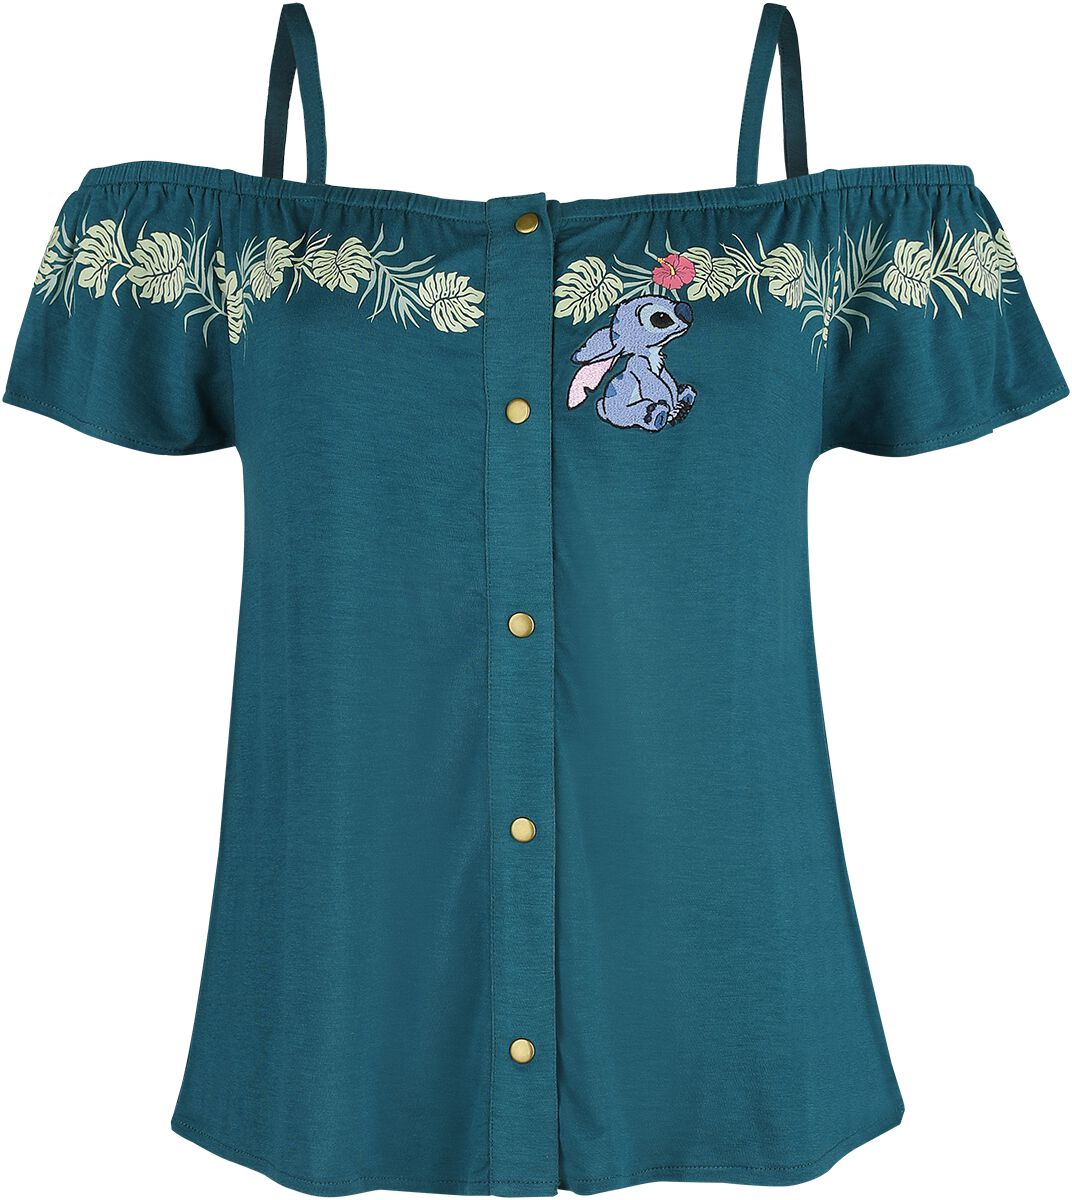 Lilo & Stitch - Disney T-Shirt - Jungle - XS bis 5XL - für Damen - Größe S - dunkelgrün  - EMP exklusives Merchandise!